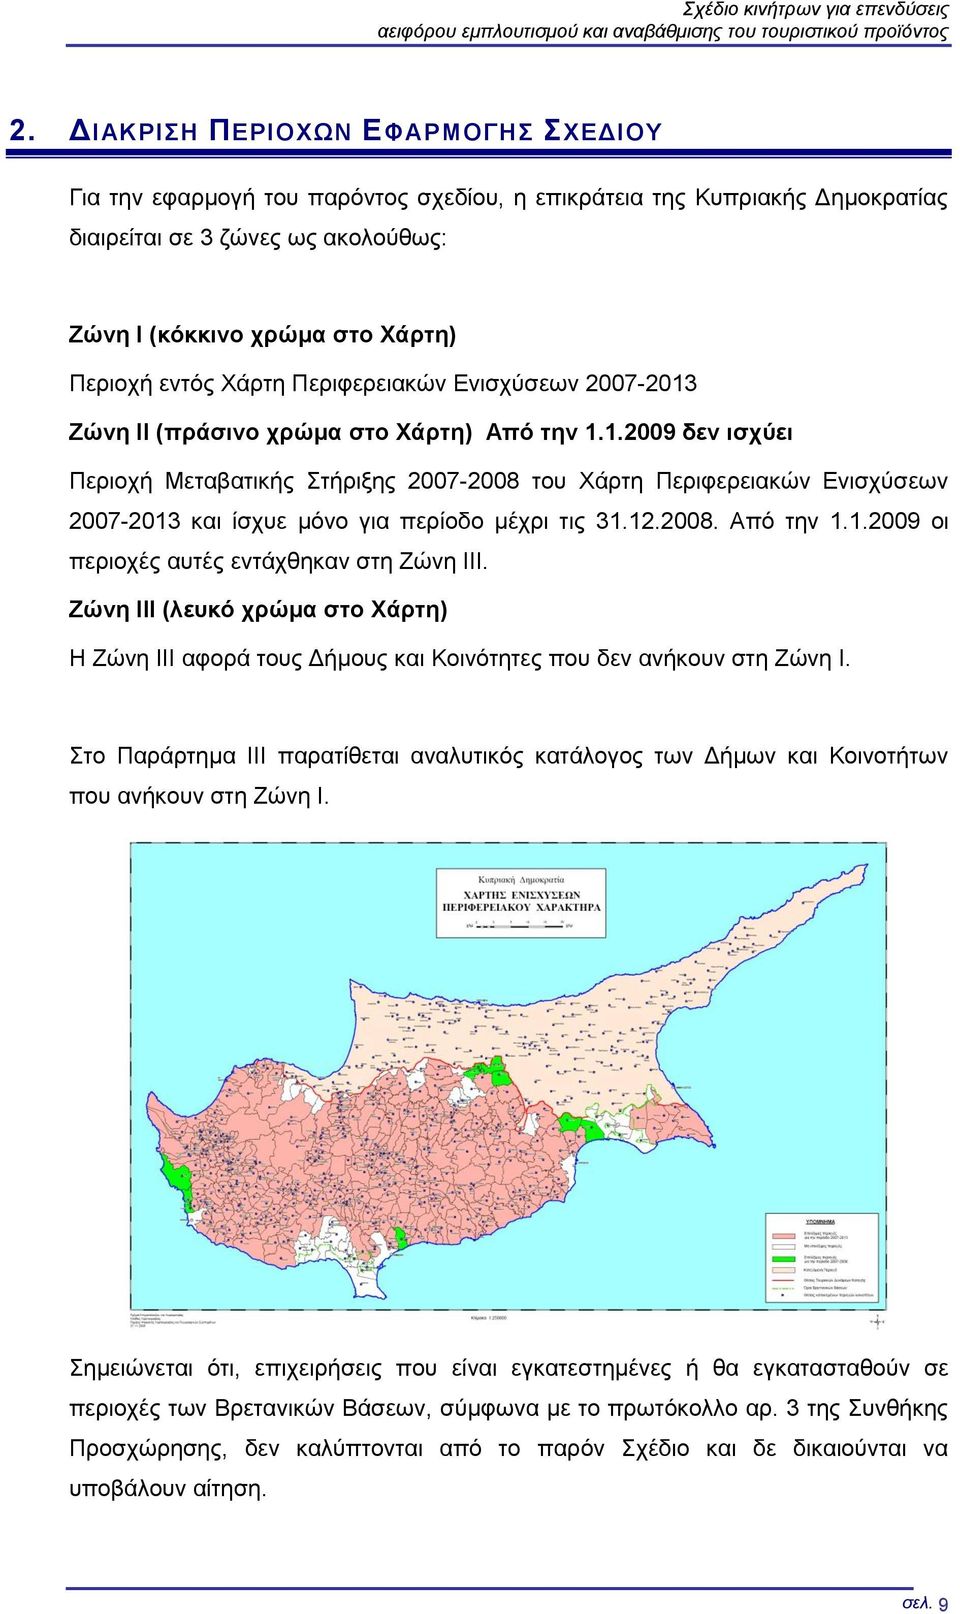 Χάρτη Περιφερειακών Ενισχύσεων 2007-2013 Ζώνη ΙΙ (πράσινο χρώμα στο Χάρτη) Από την 1.1.2009 δεν ισχύει Περιοχή Μεταβατικής Στήριξης 2007-2008 του Χάρτη Περιφερειακών Ενισχύσεων 2007-2013 και ίσχυε μόνο για περίοδο μέχρι τις 31.